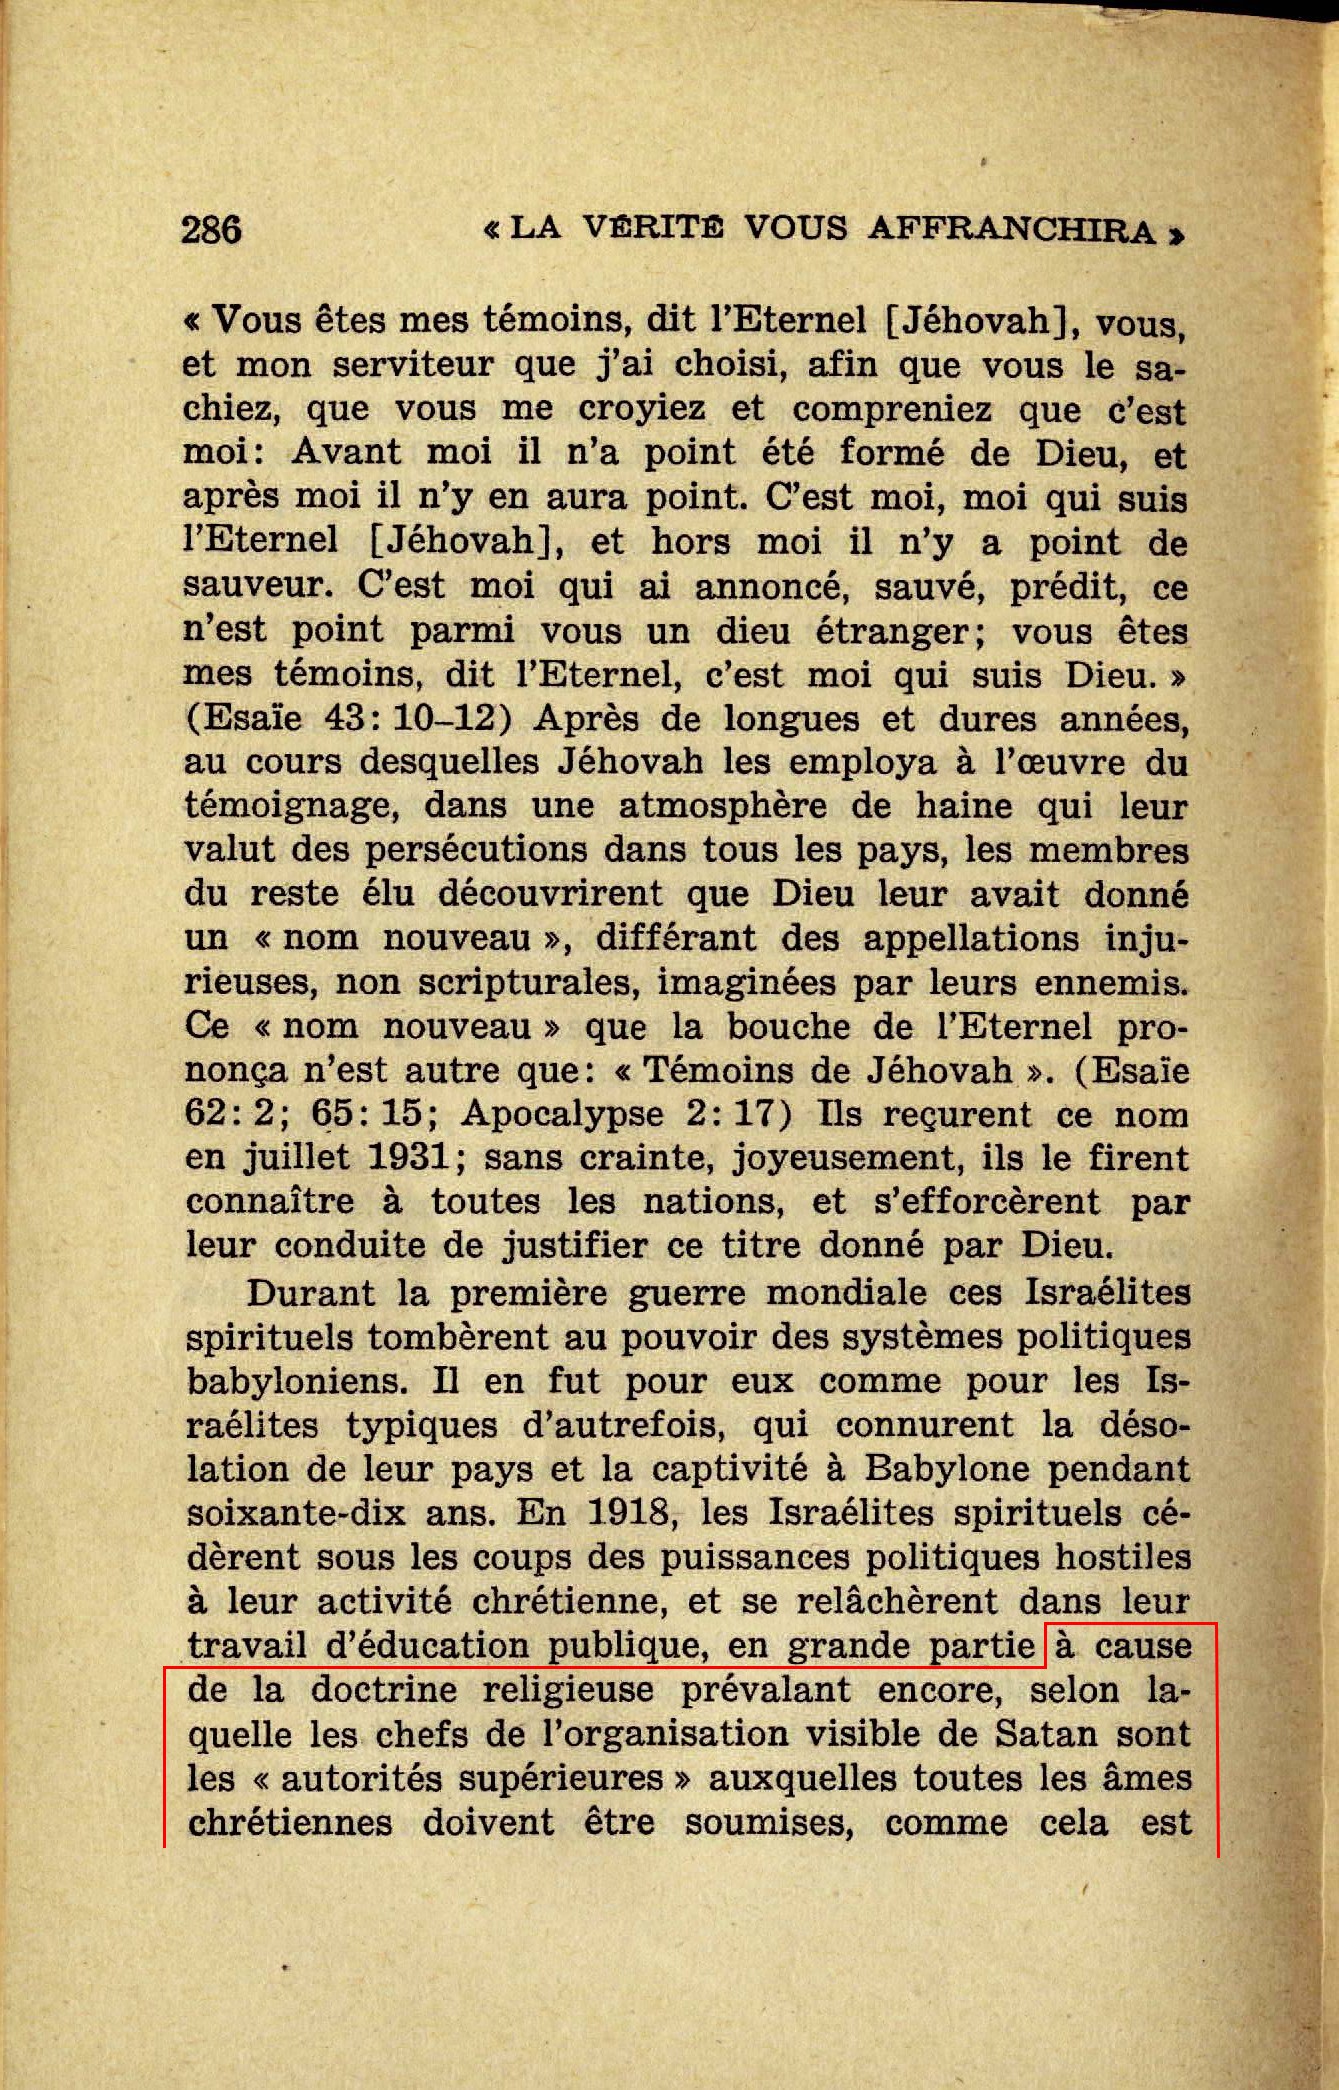 Enseignements non bibliques du collège central  - Page 7 La-verite-vous-affranchira-1947-p286